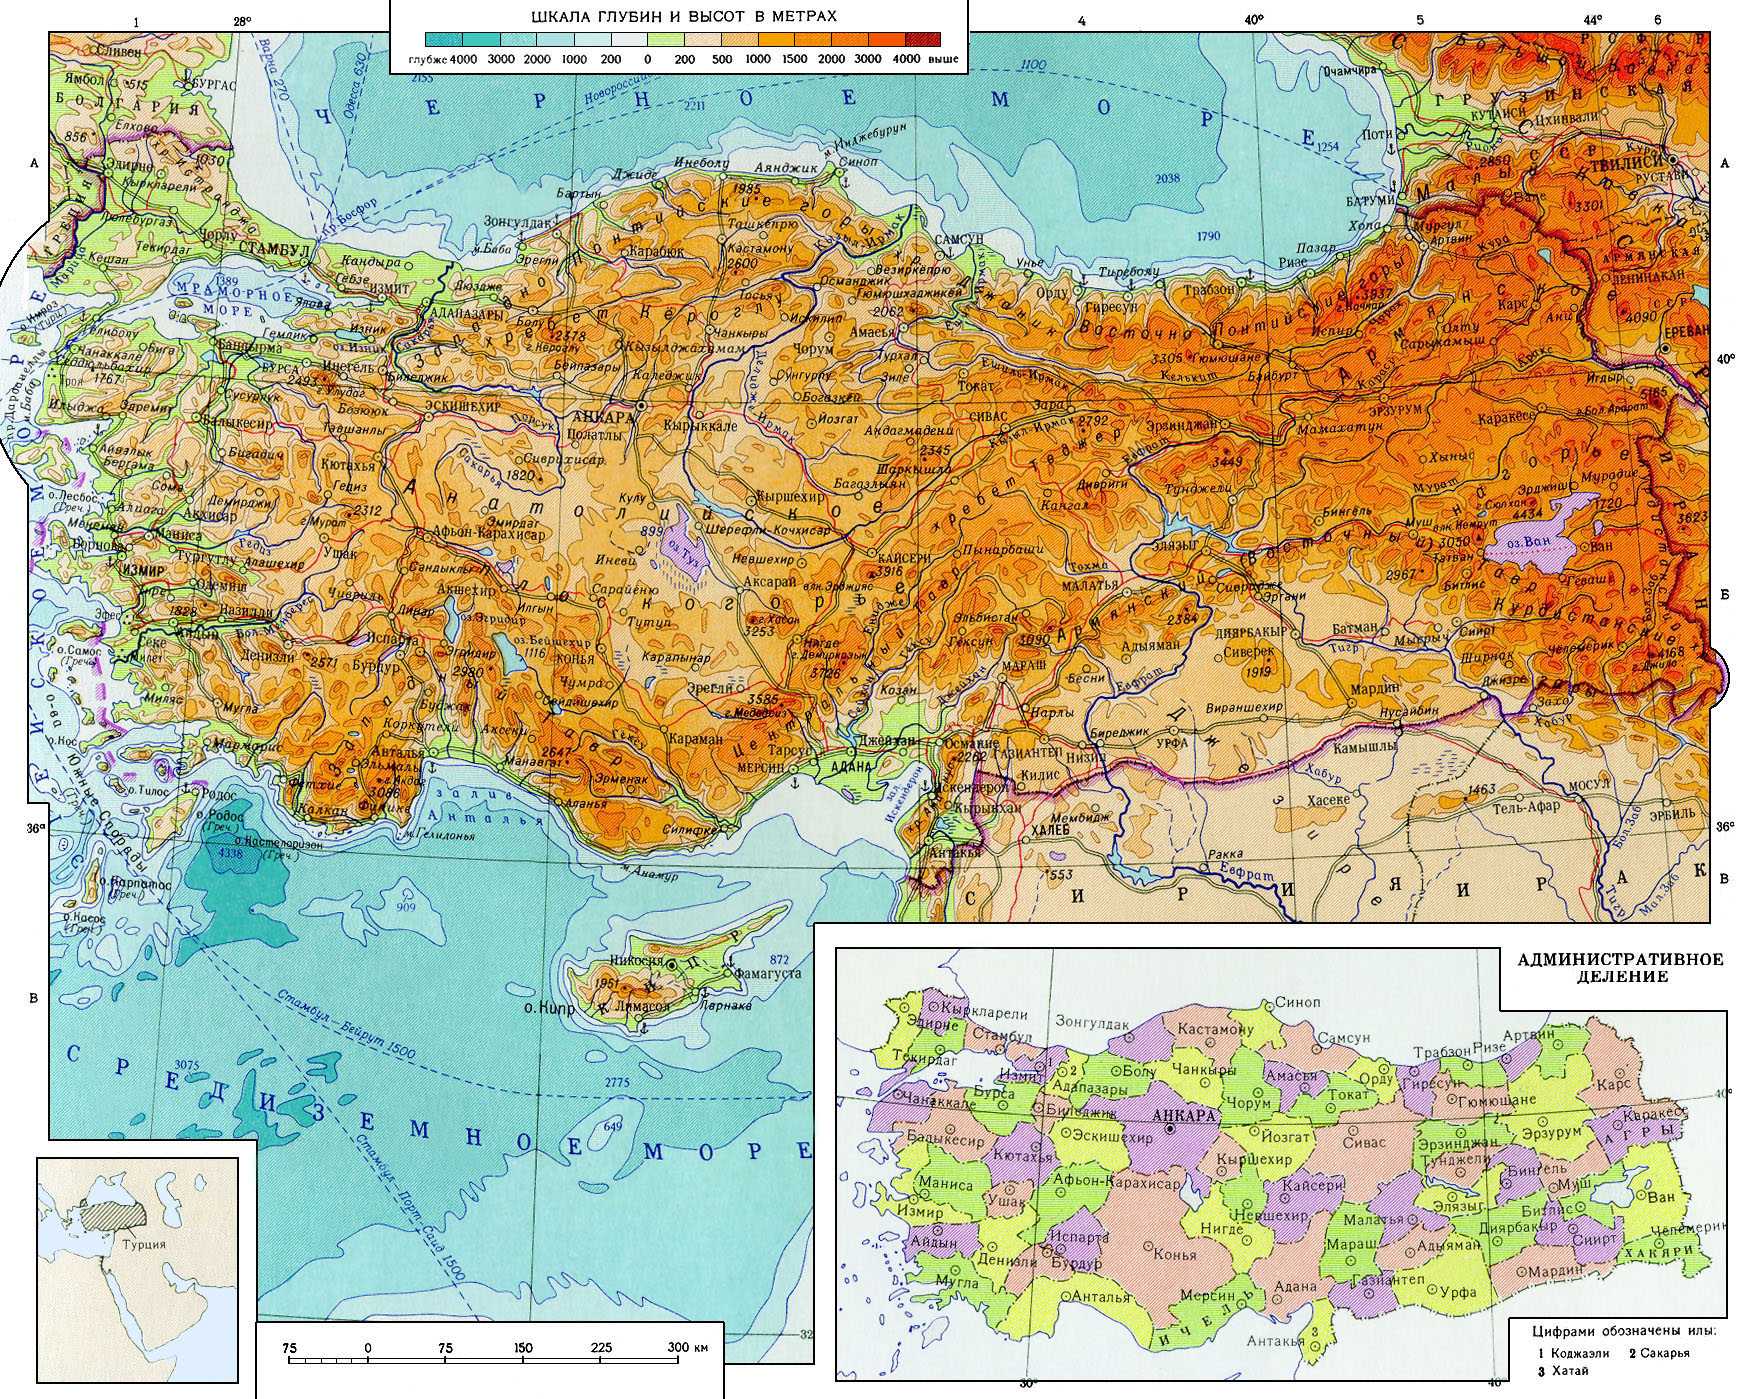 Турция география